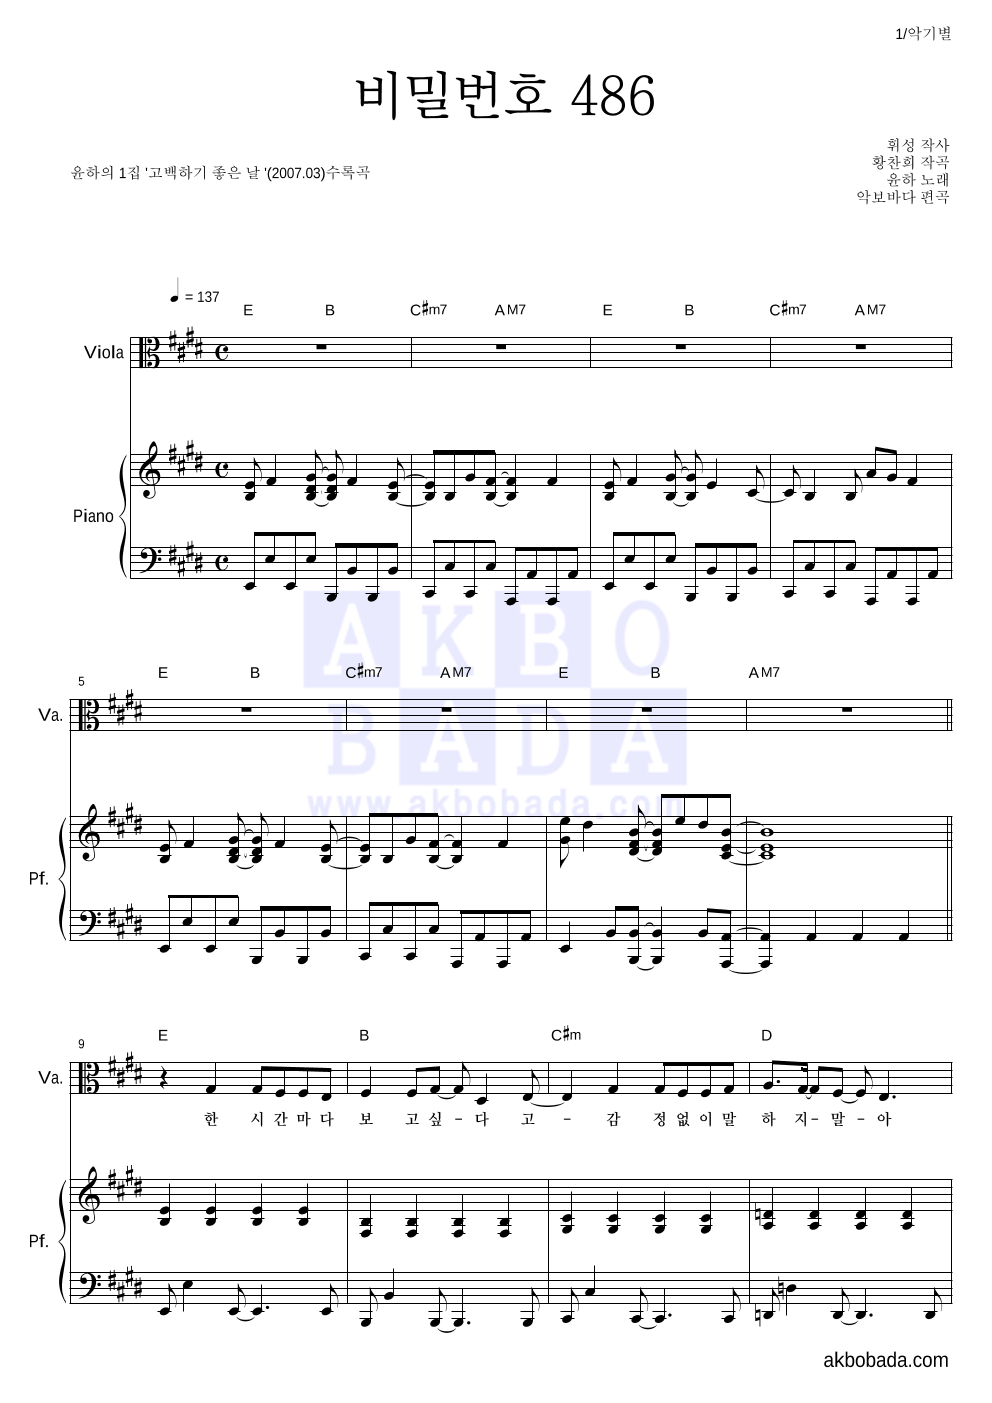 윤하 - 비밀번호 486 비올라&피아노 악보 